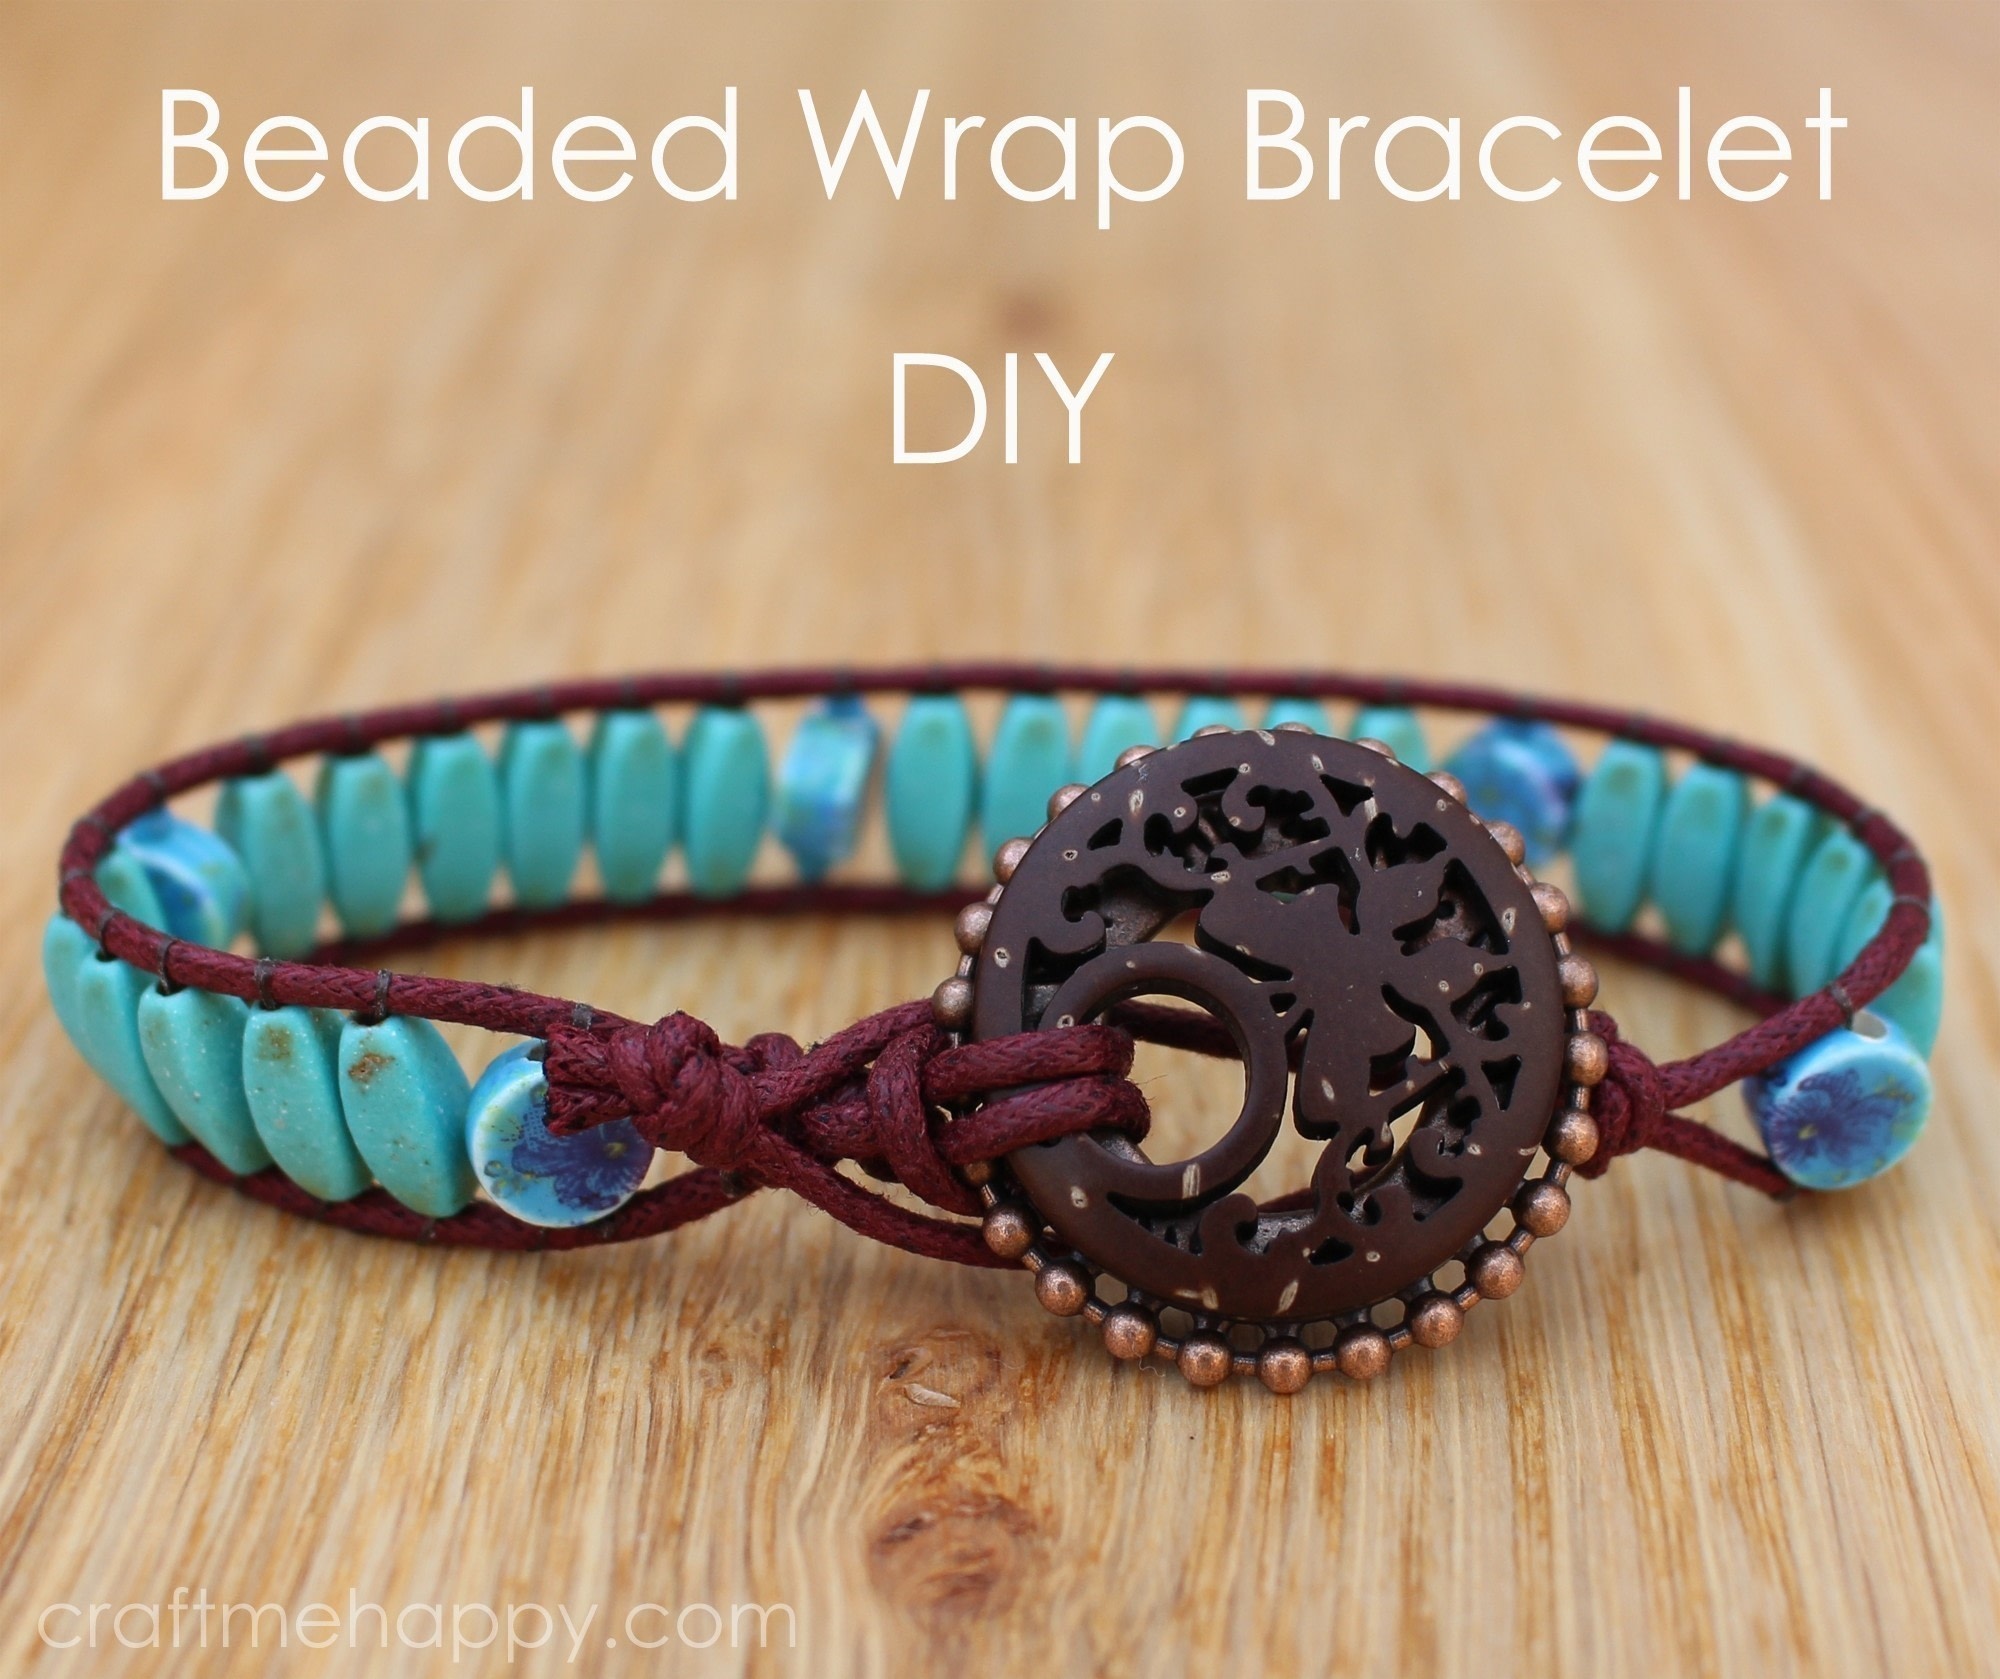 Wrap bracelet with statement bead